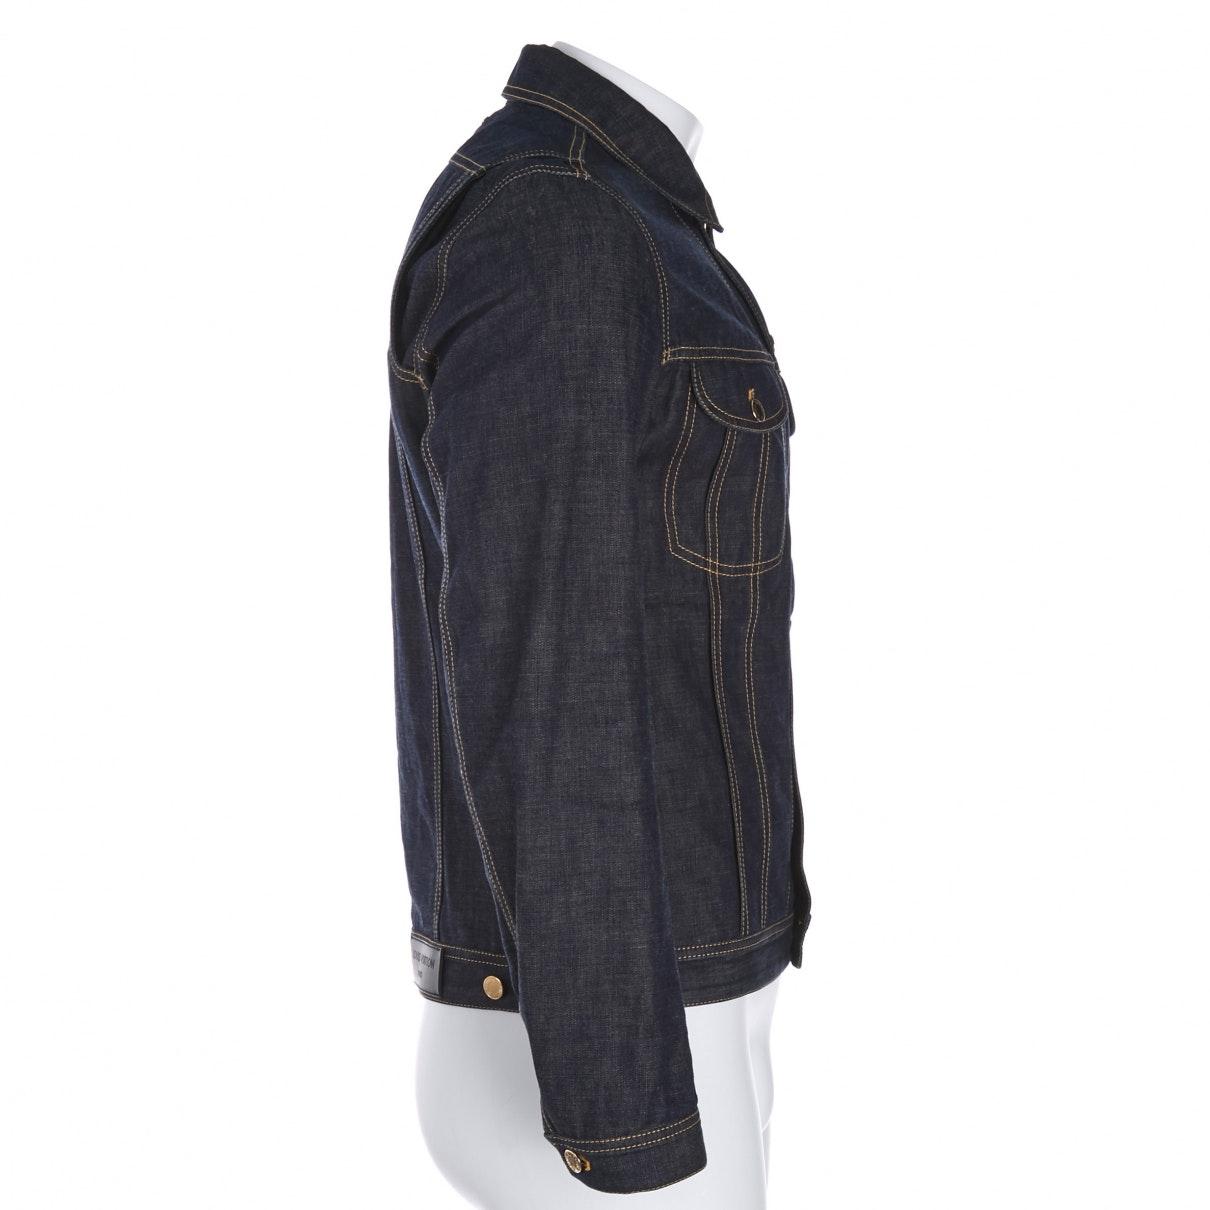 Louis Vuitton Blue Denim - Jeans Jacket for Men - Lyst